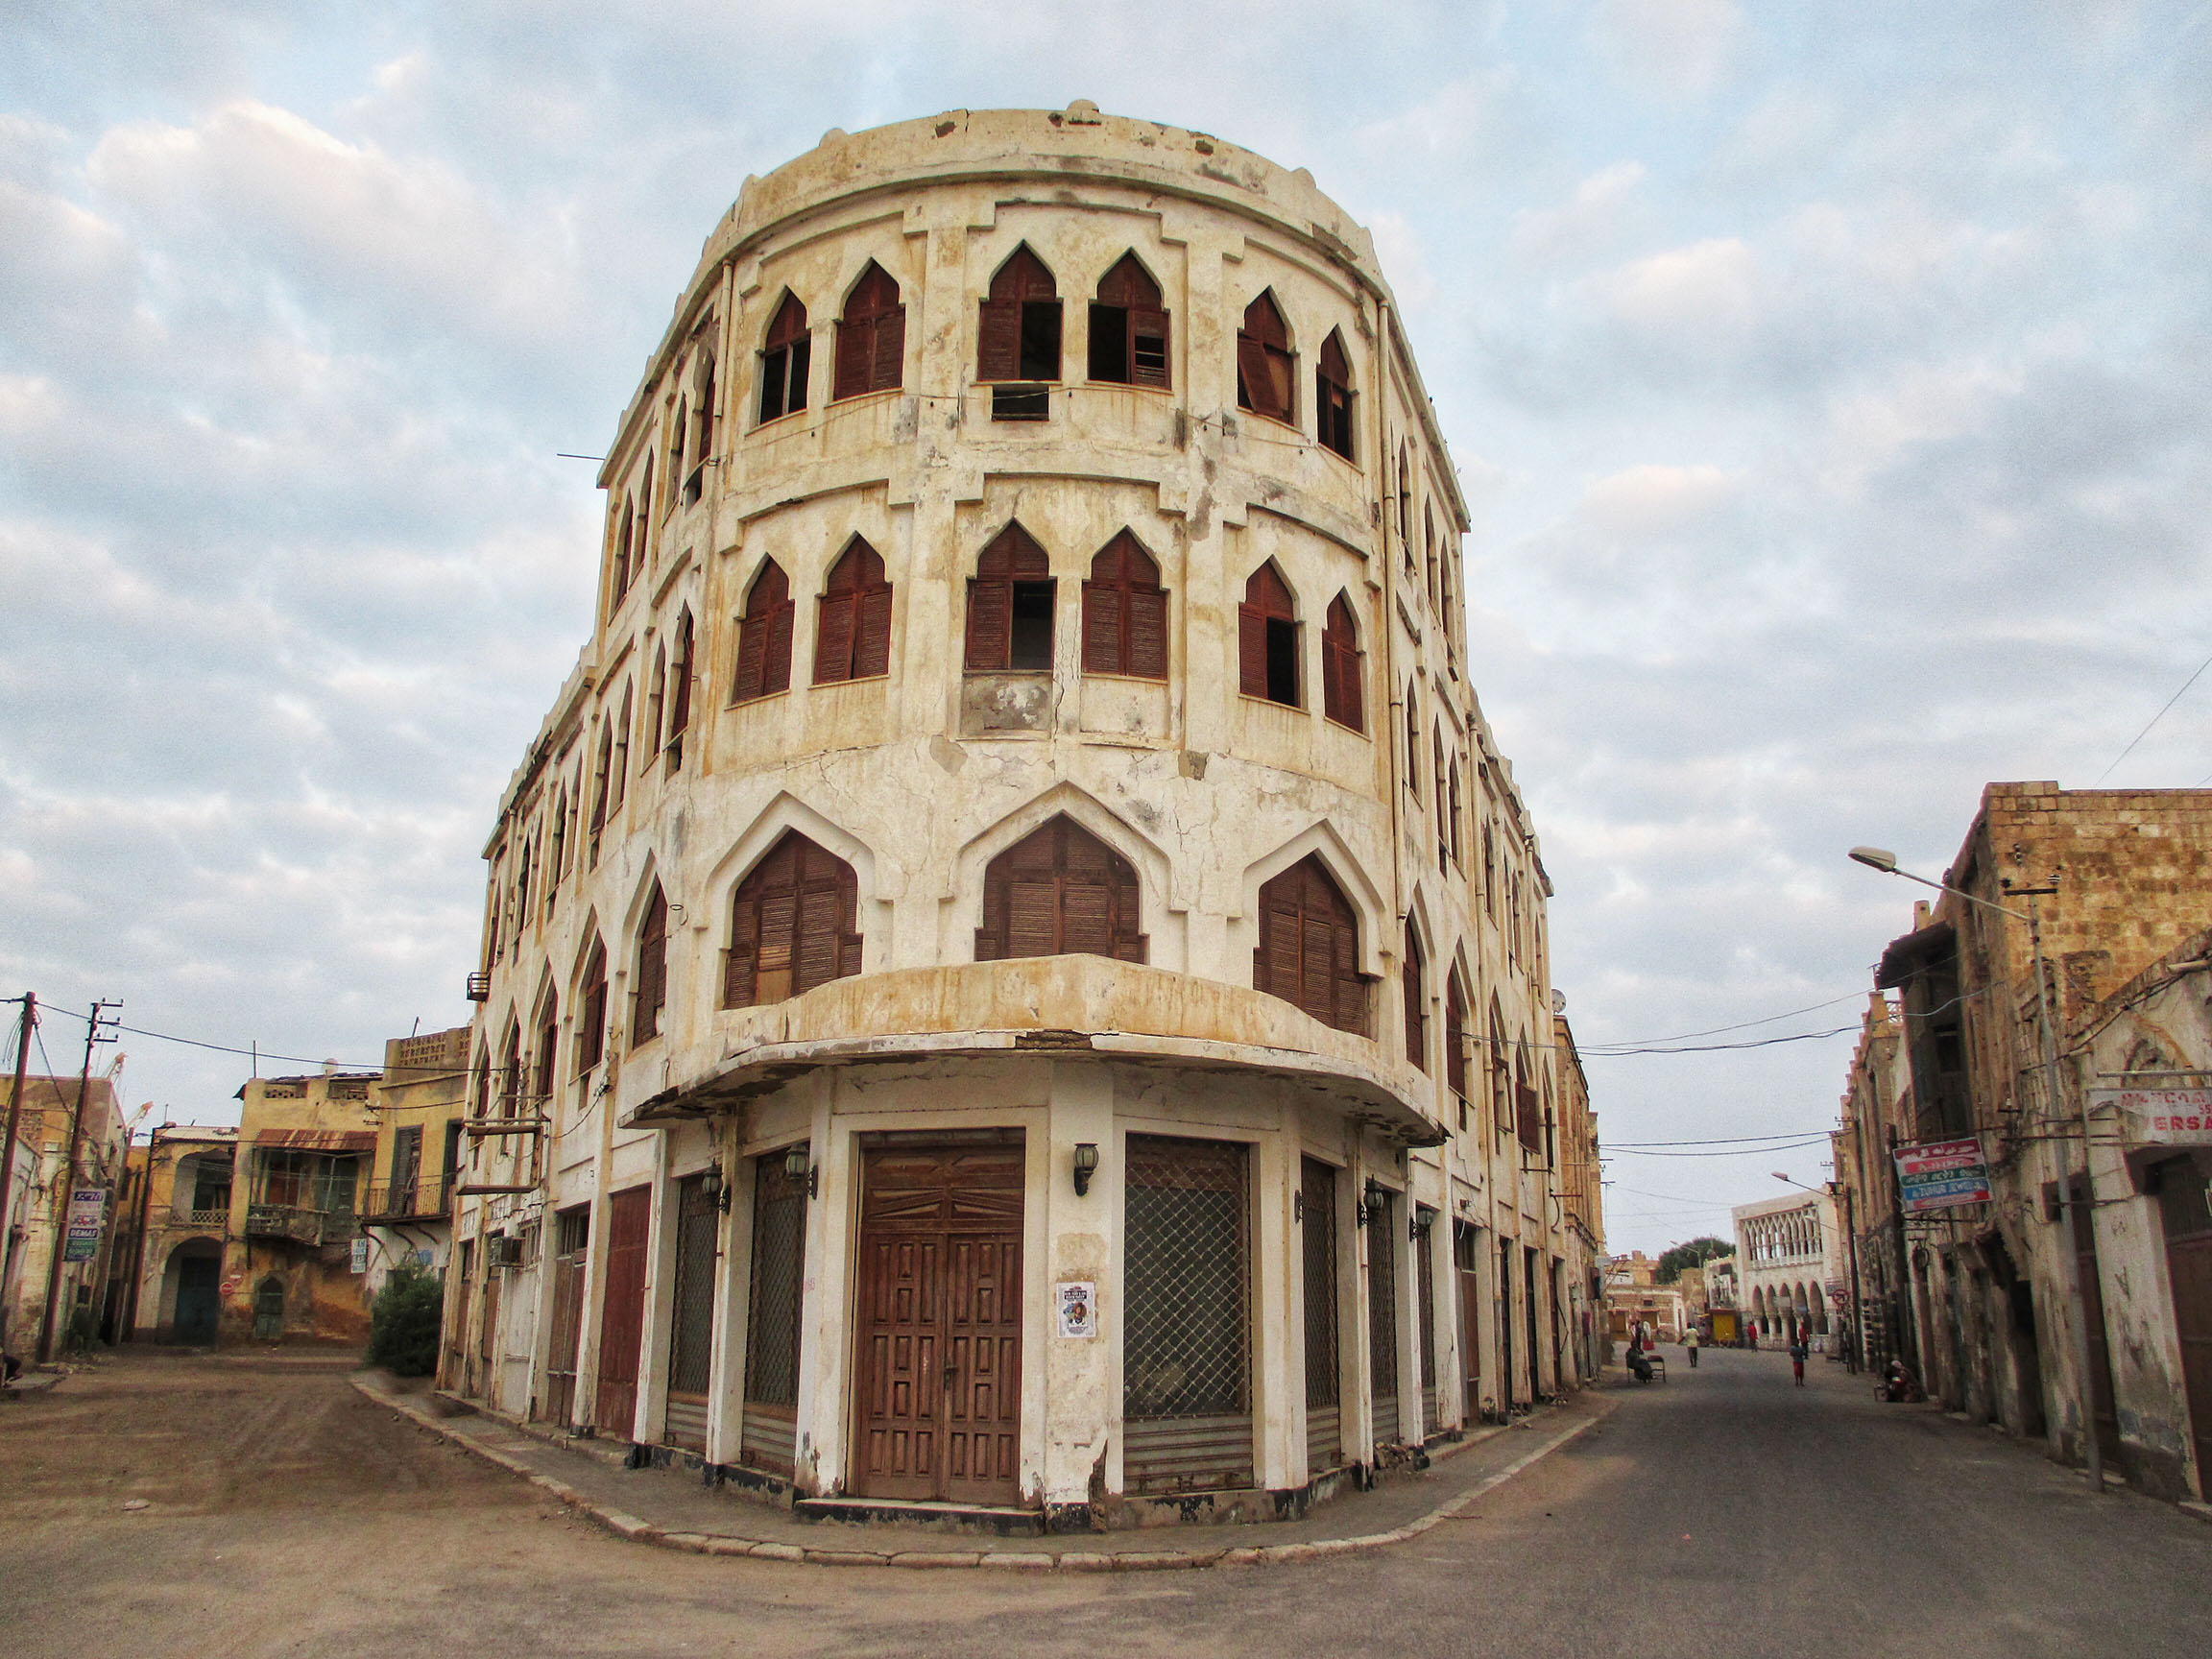 Ruins of Hotel Torino in Massawa, Eritrea.